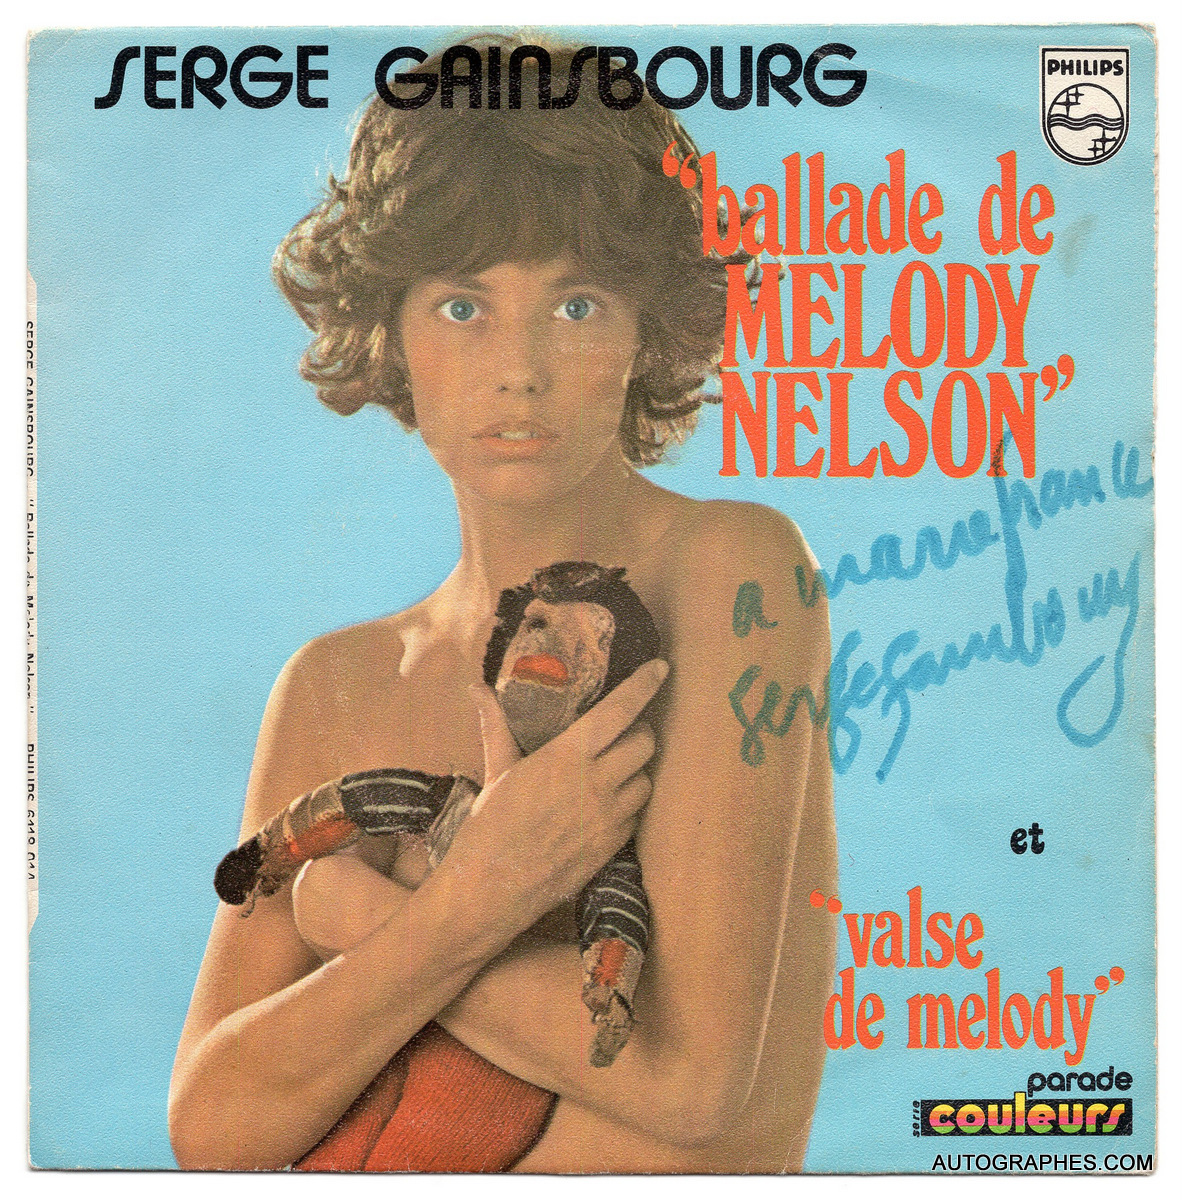 Serge GAINSBOURG - Dédicace autographe sur pochette du disque 45 tours Ballade de Melody Nelson (1971)